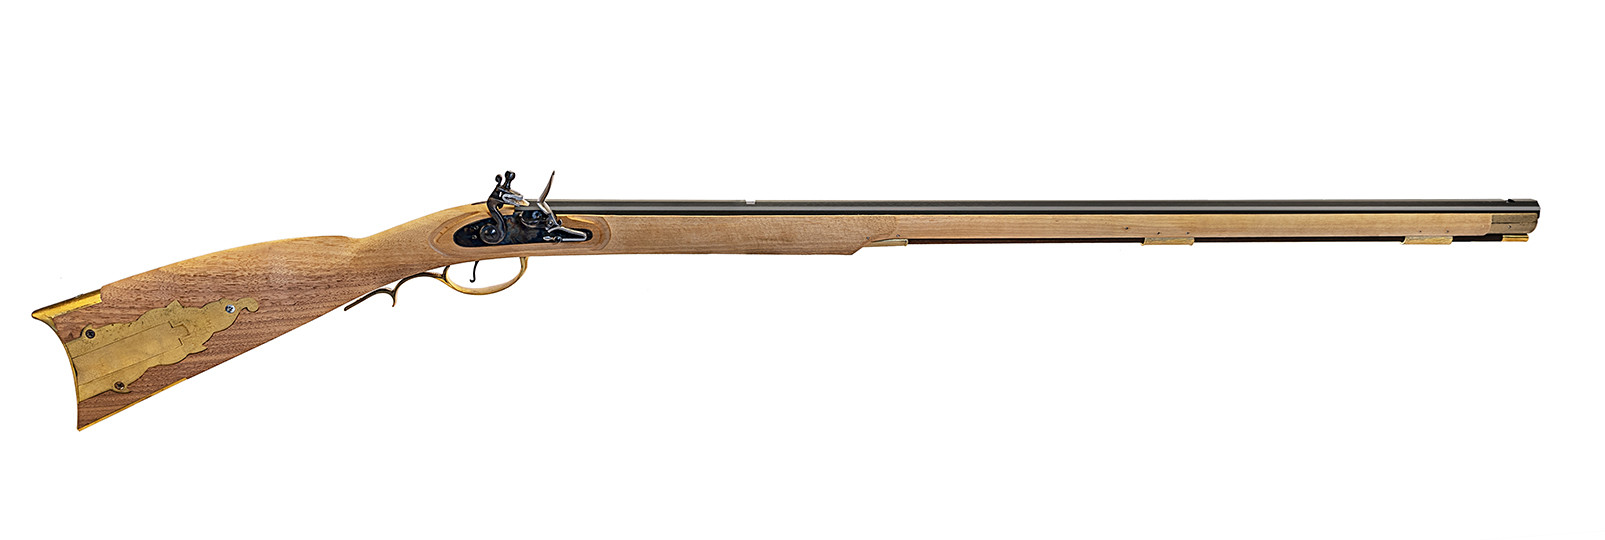 Kentucky rifle flintlock Kit